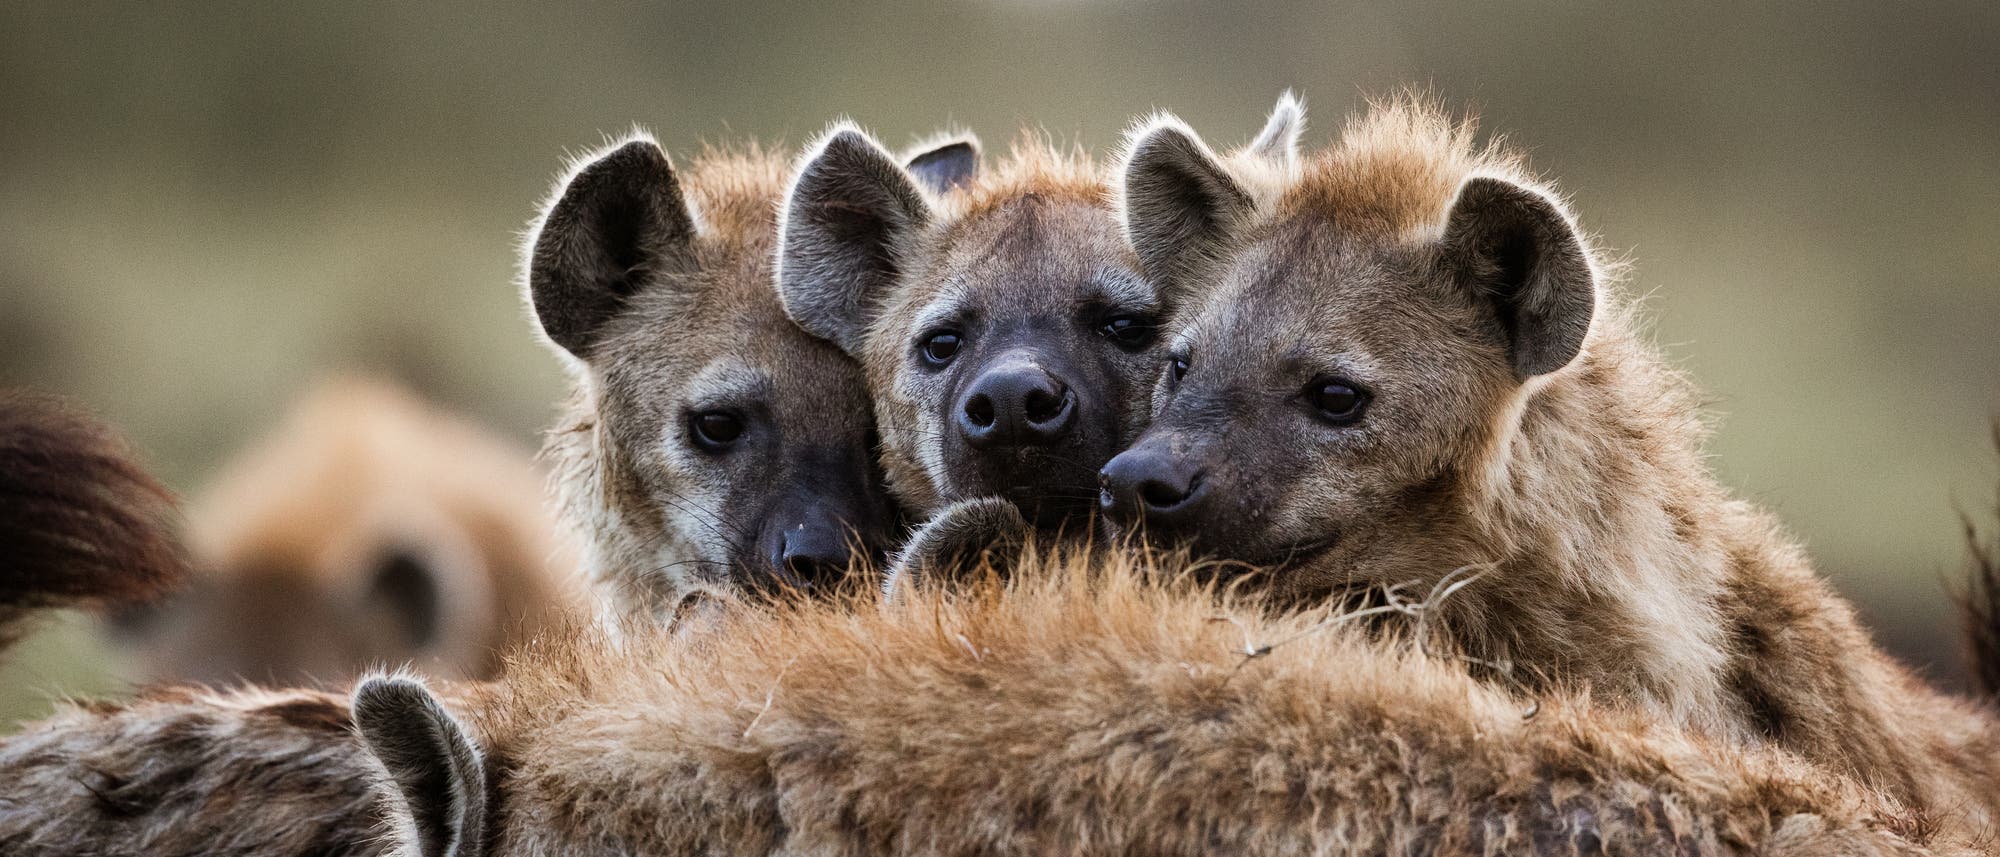 Hyänen sind sehr soziale Tiere